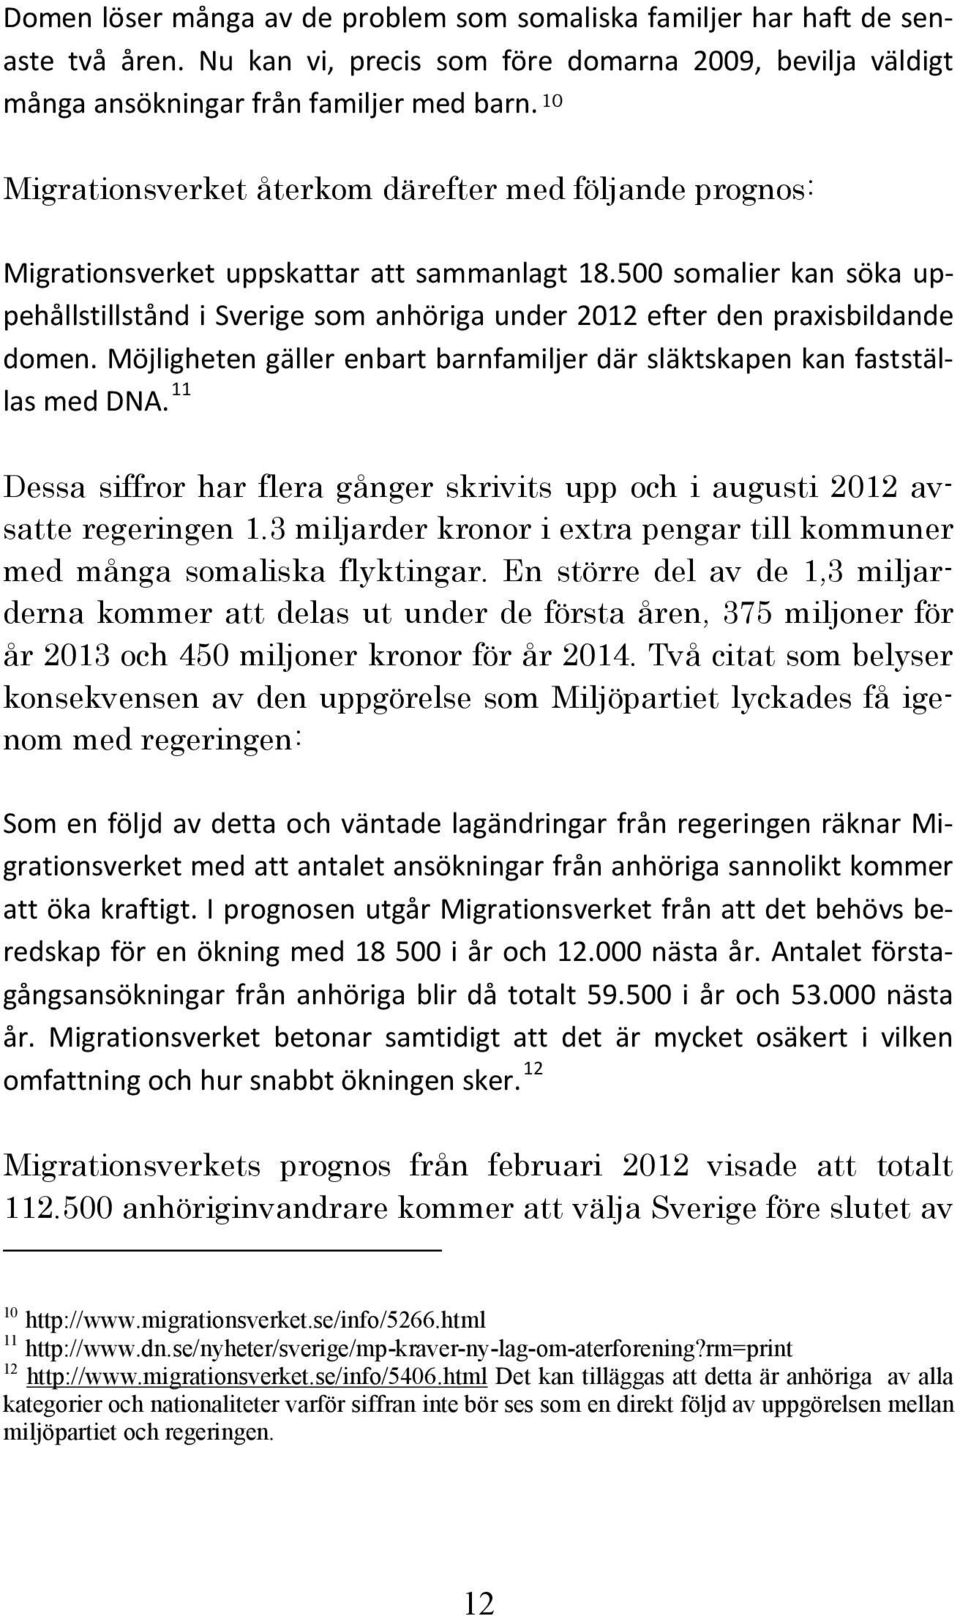 500 somalier kan söka uppehållstillstånd i Sverige som anhöriga under 2012 efter den praxisbildande domen. Möjligheten gäller enbart barnfamiljer där släktskapen kan fastställas med DNA.